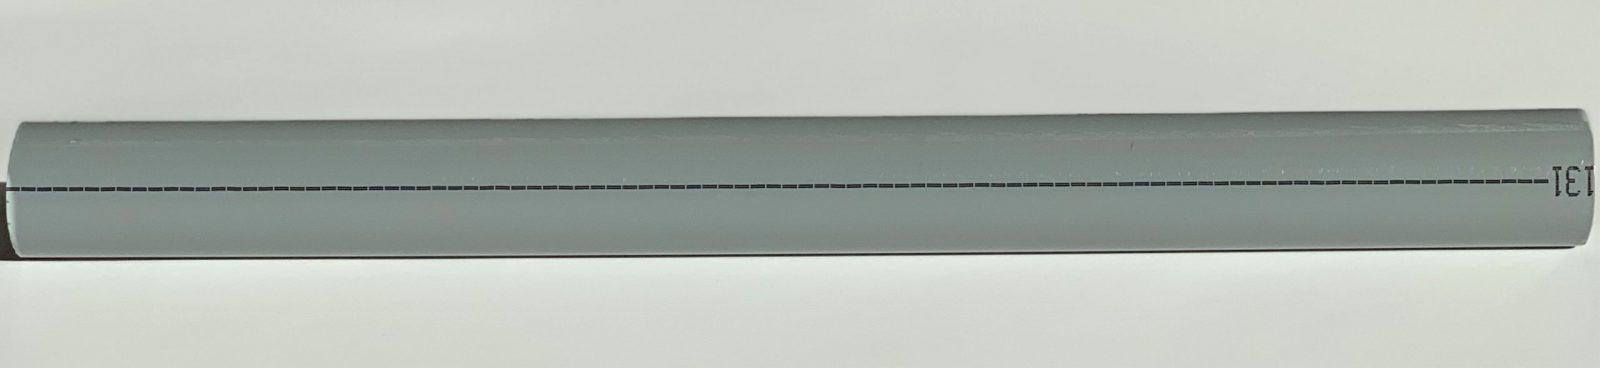 Труба аспирационная жесткая ABS диаметром 25 мм (Typ ABSR-2518 по 5 метров) Wagner 01-10-9210